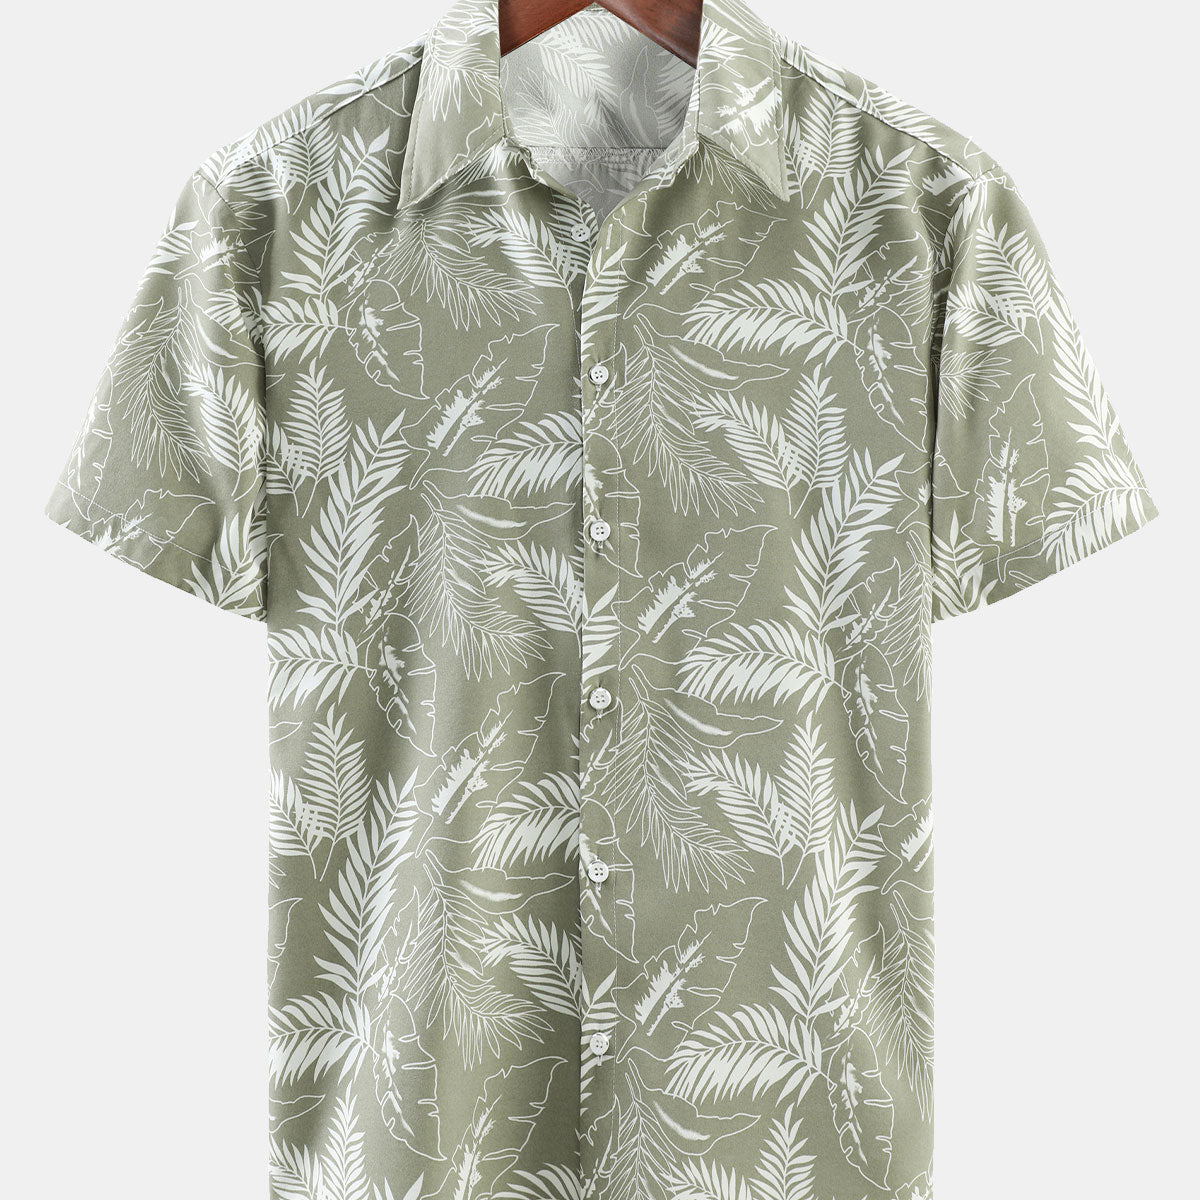 Men's Summer Tropical Print Beach Button Up Short Sleeve Shirt